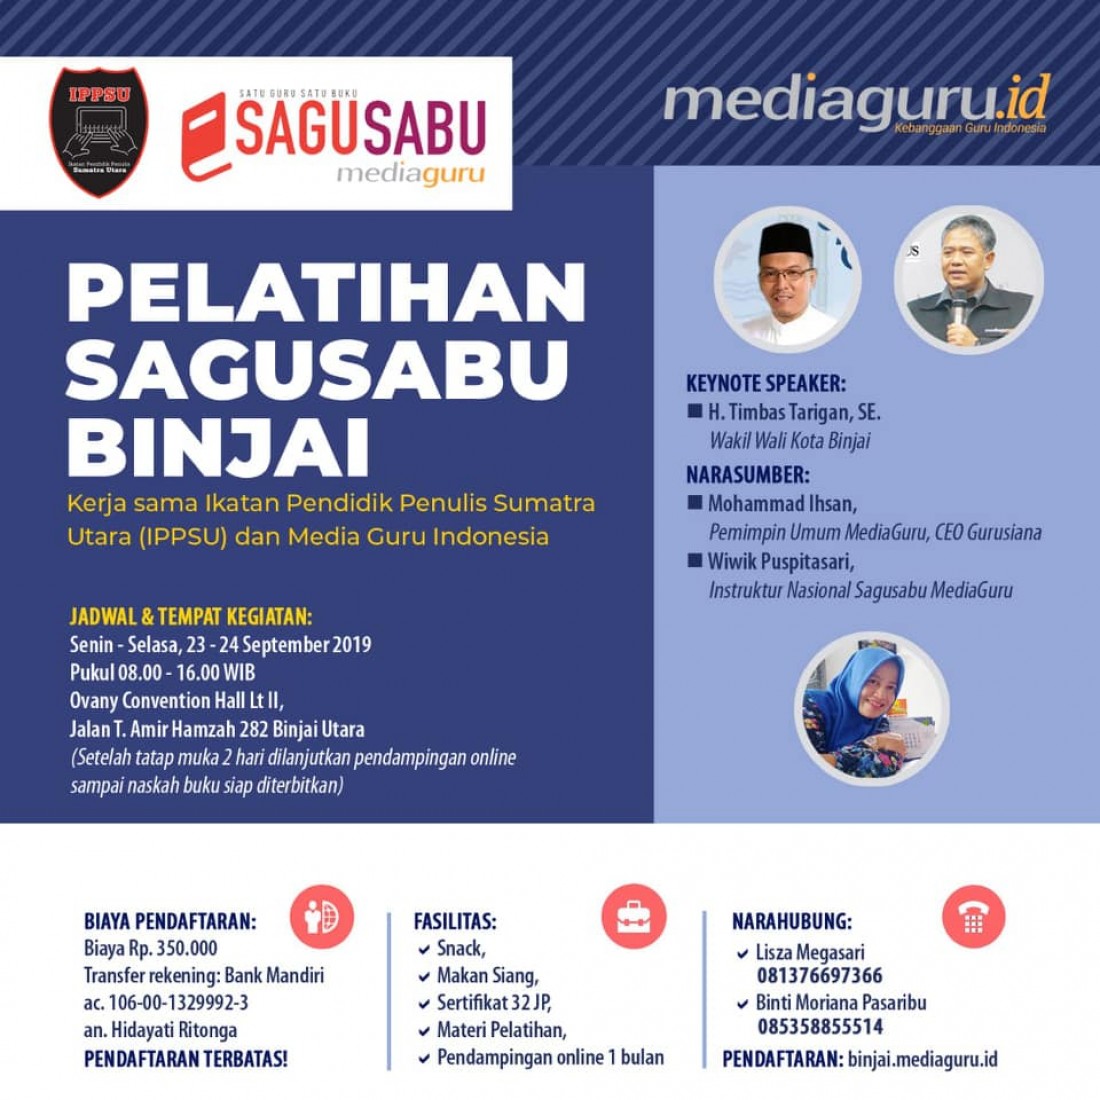 Pelatihan Sagusabu Binjai Sumut (23 - 24 September 2019)